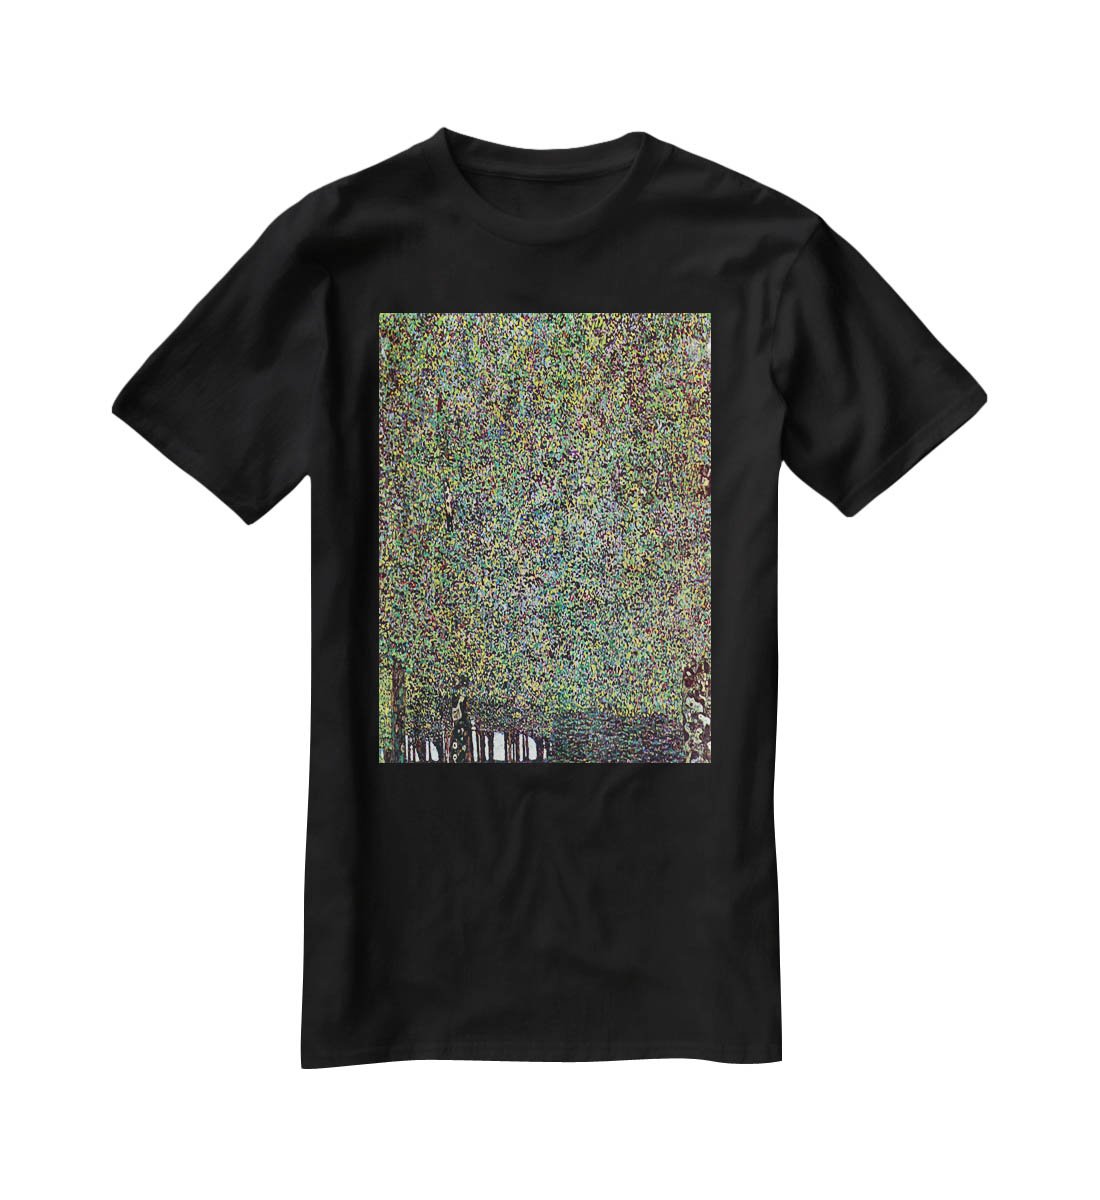 The Park by Klimt T-Shirt - Canvas Art Rocks - 1